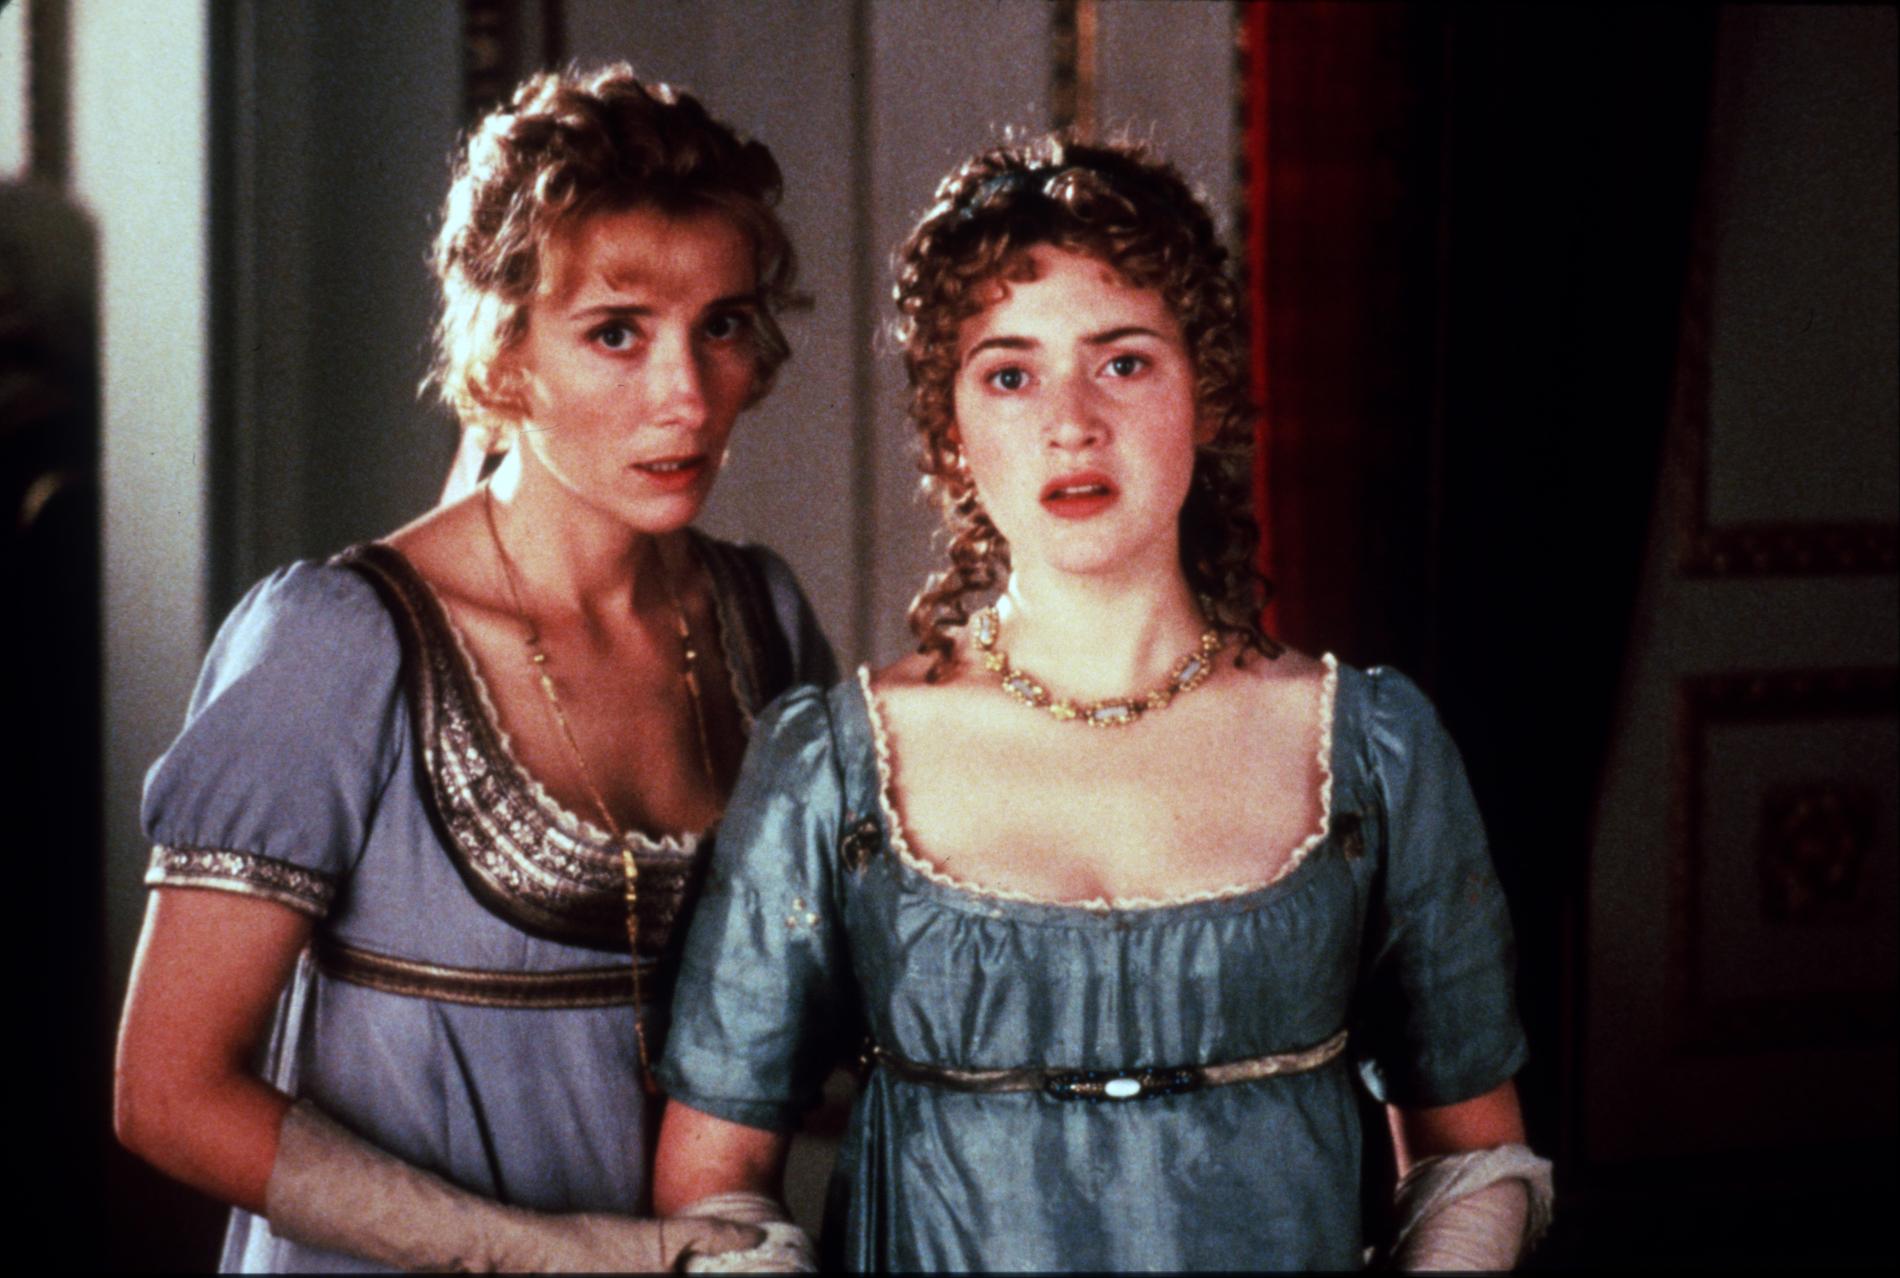 Kate Winslet har nominerats till en Oscar sju gånger och vunnit en. Här i ”Förnuft och känsla” mot Emma Thompson 1996, som var den första filmen hon nominerades för.